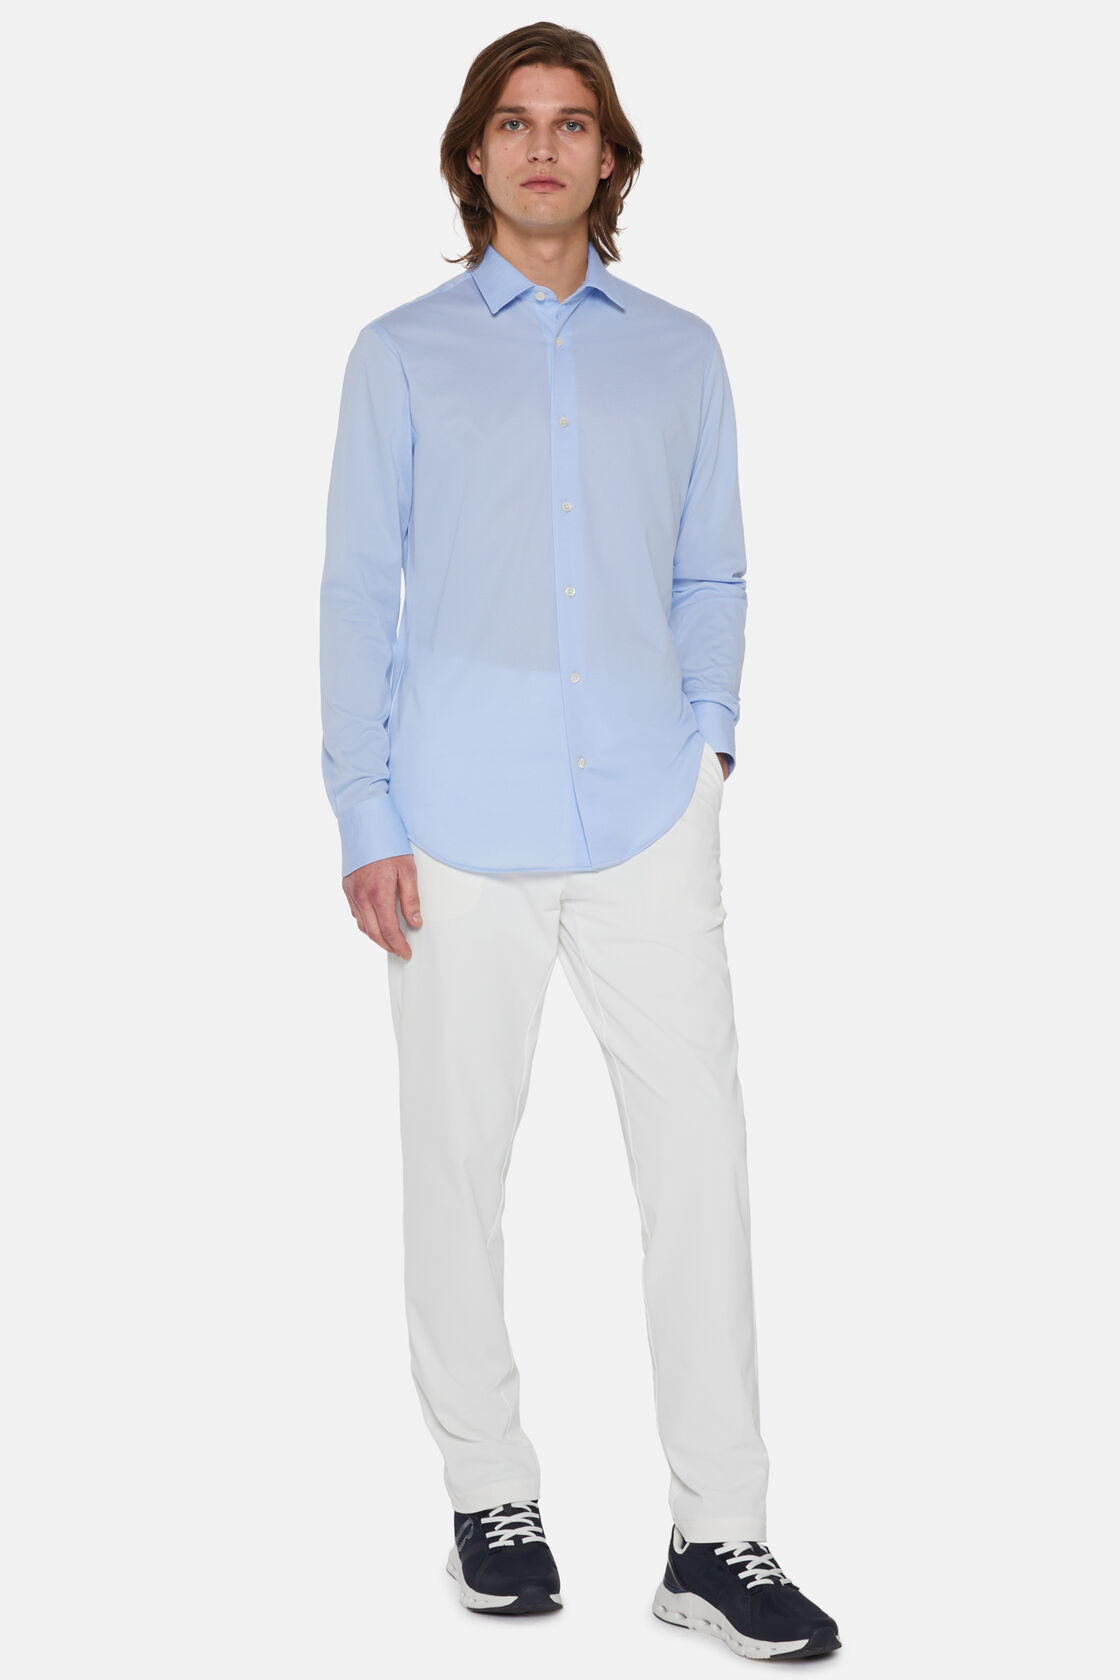 Μπλε πουκάμισο σε στενή γραμμή από βαμβάκι και COOLMAX®, Light Blue, hi-res